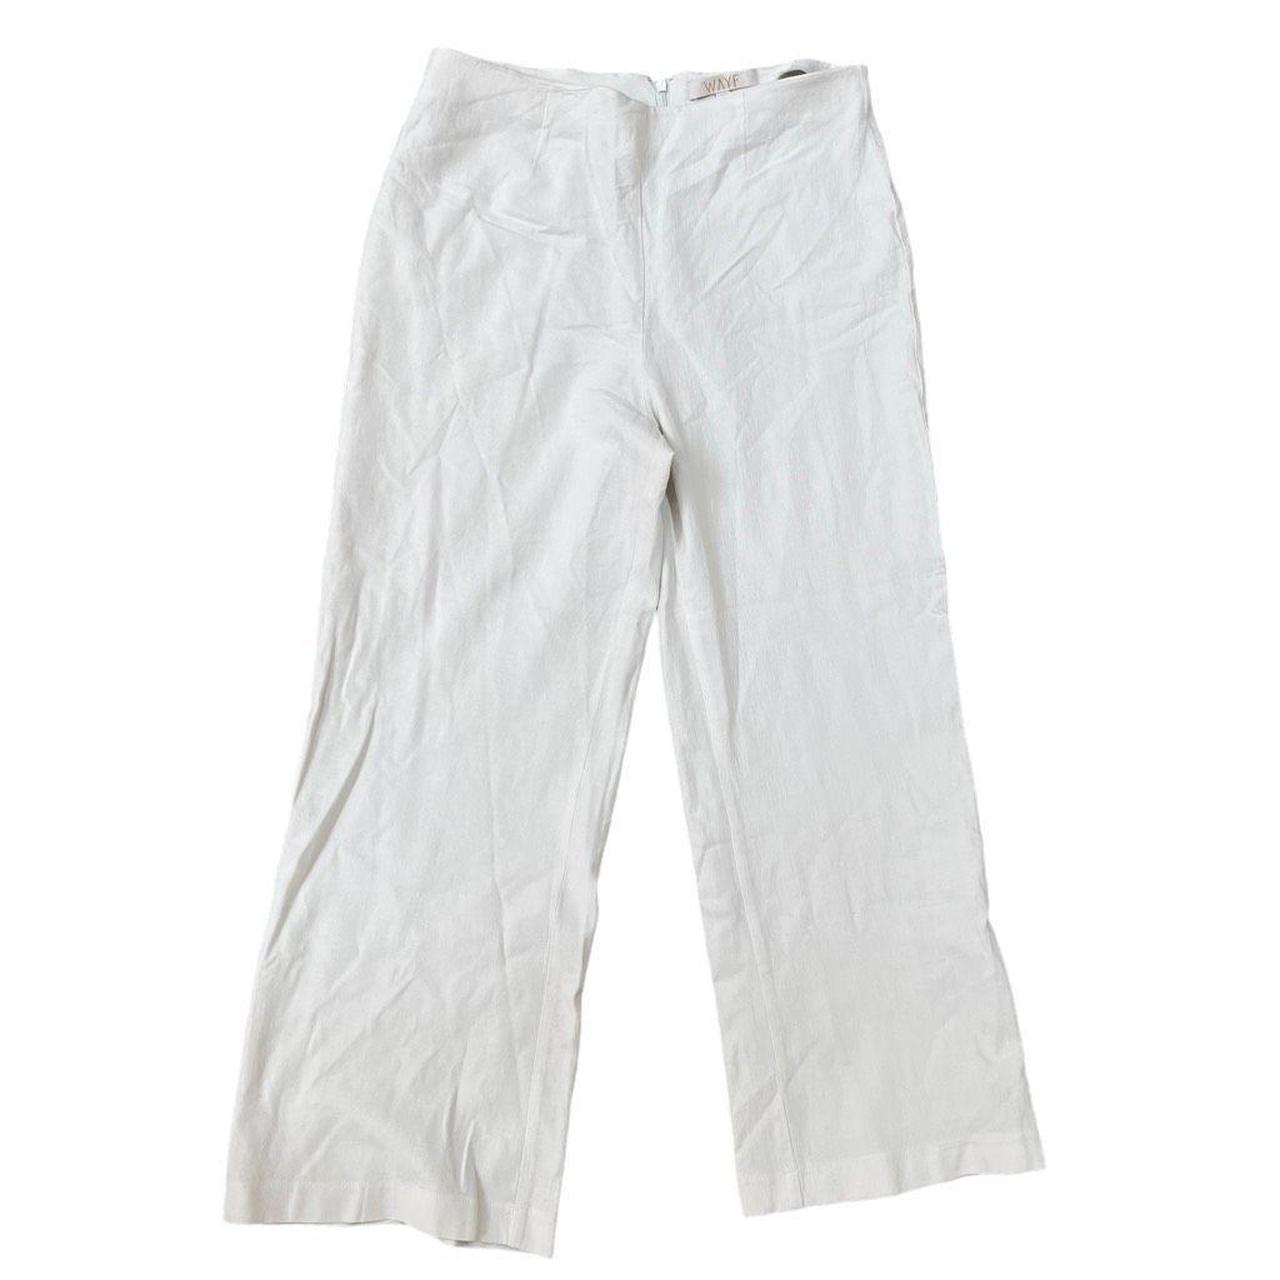 Wayf linen blend cropped summer pants size M back... - Depop